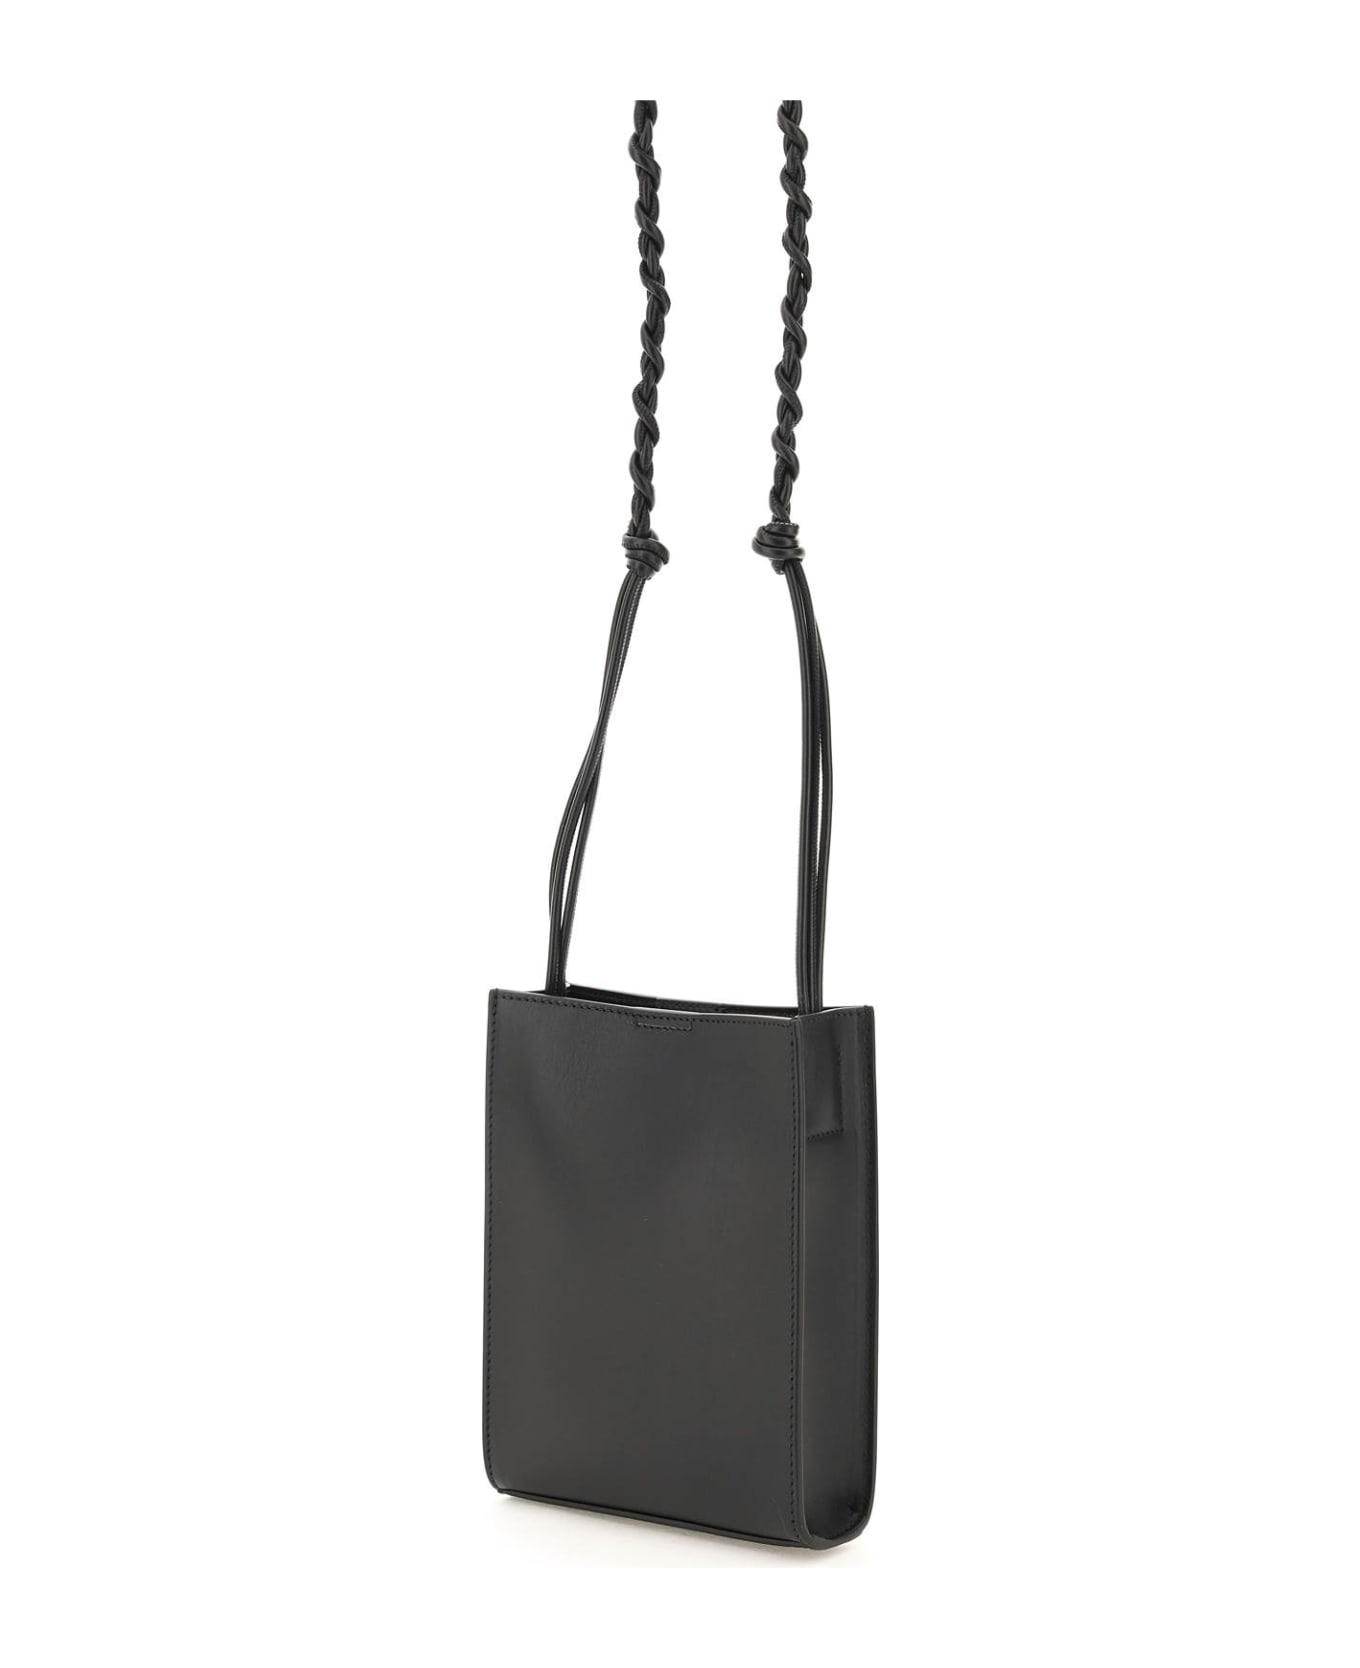 Jil Sander Tangle Crossbody Bag In Black Leather - Black